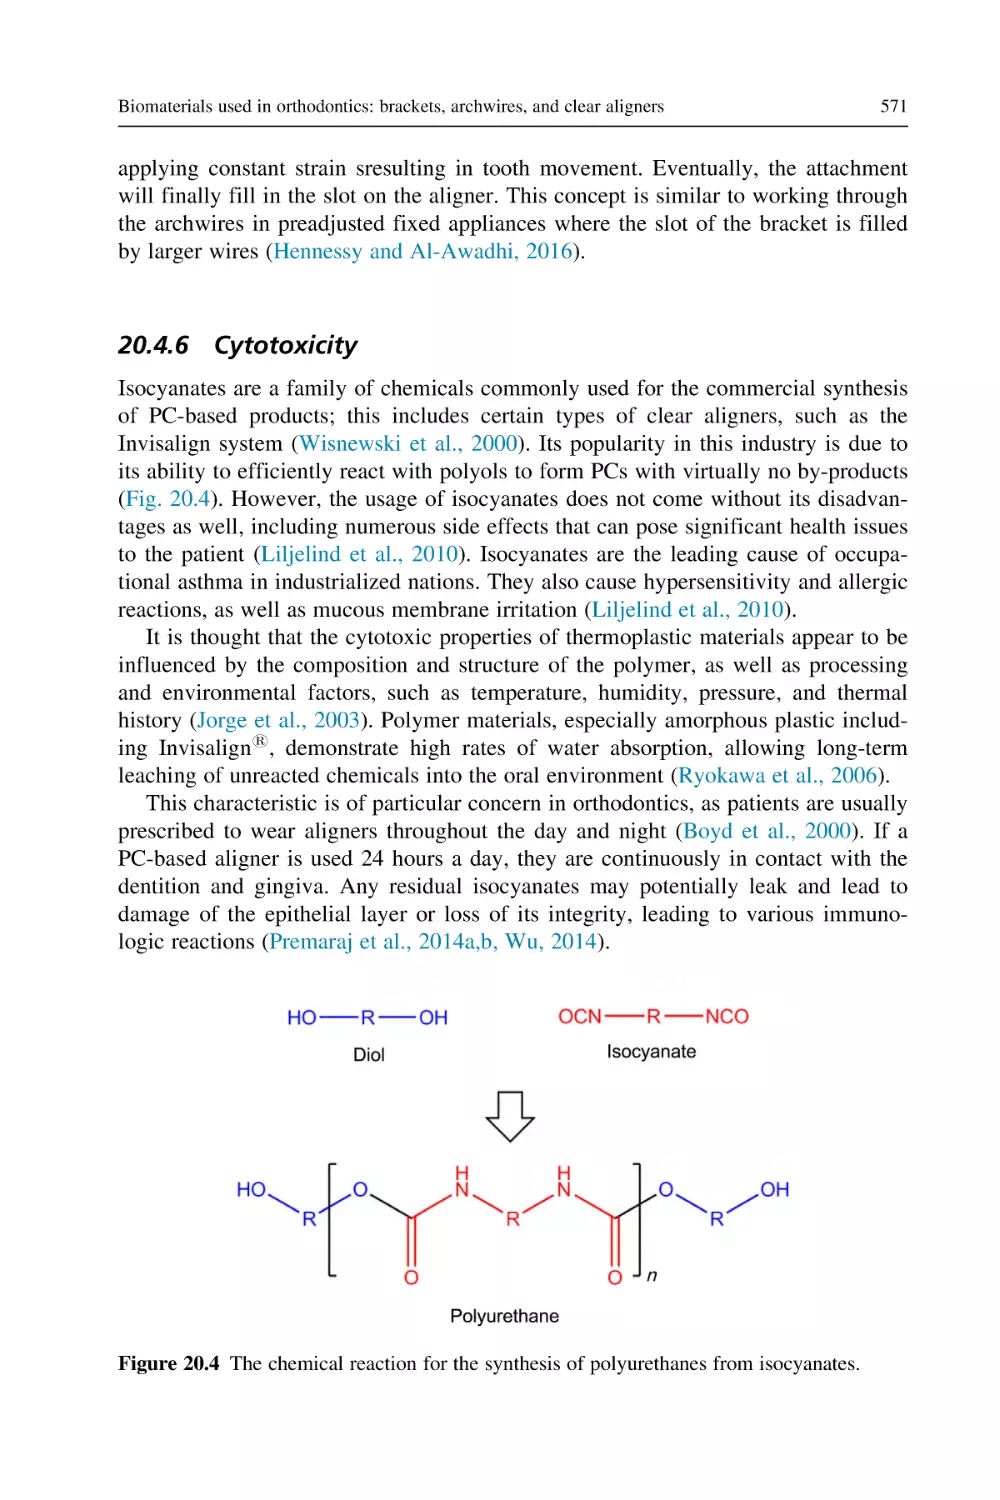 20.4.6 Cytotoxicity